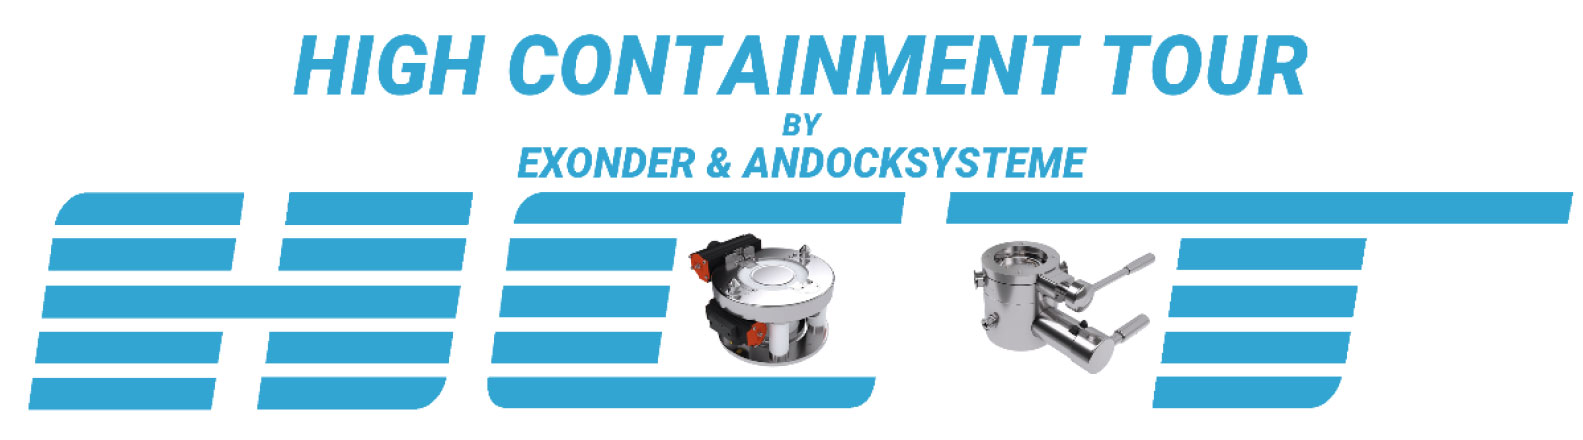 Al momento stai visualizzando High Containment Tour: tecnologie di contenimento polveri by Exonder & Andocksysteme